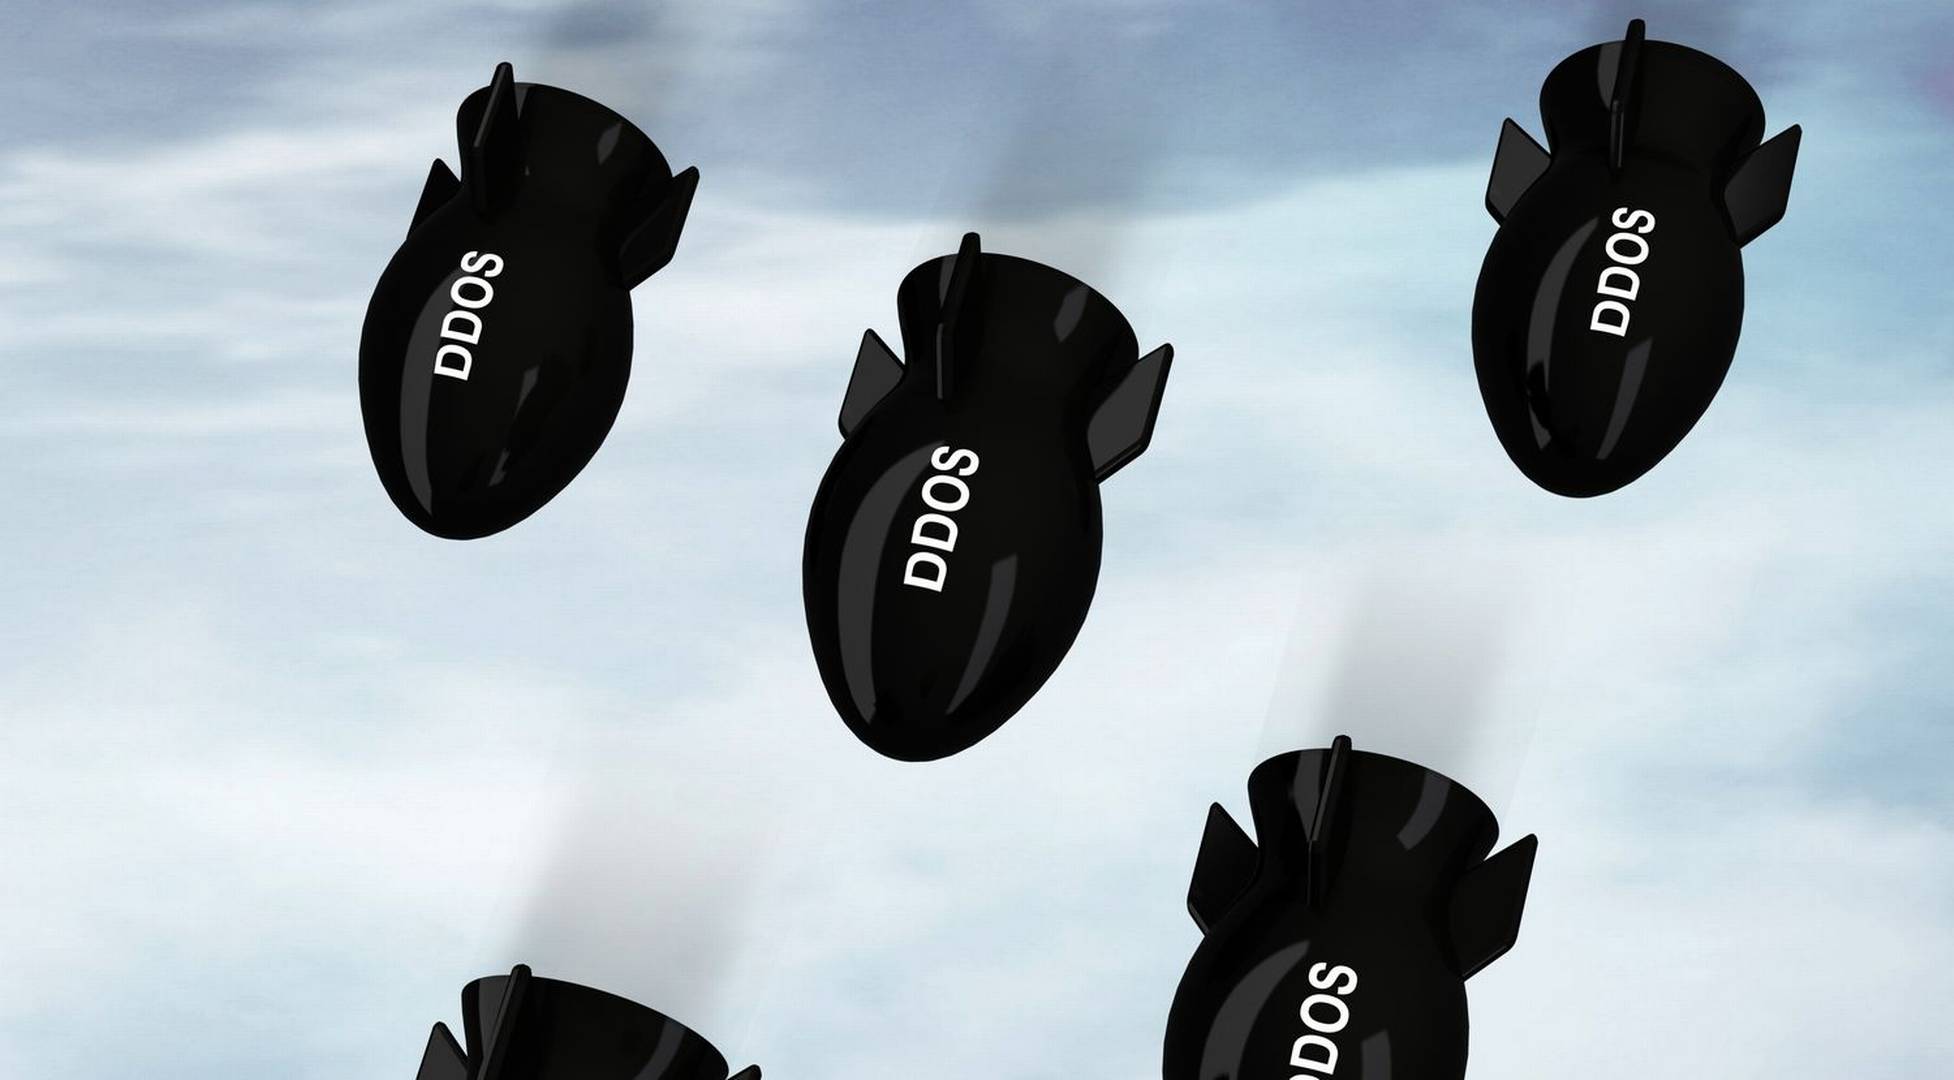 Правоохранительные органы США, Британии и Нидерландов сообщили о закрытии сразу 15 крупных сервисов DDoS-атак по найму.